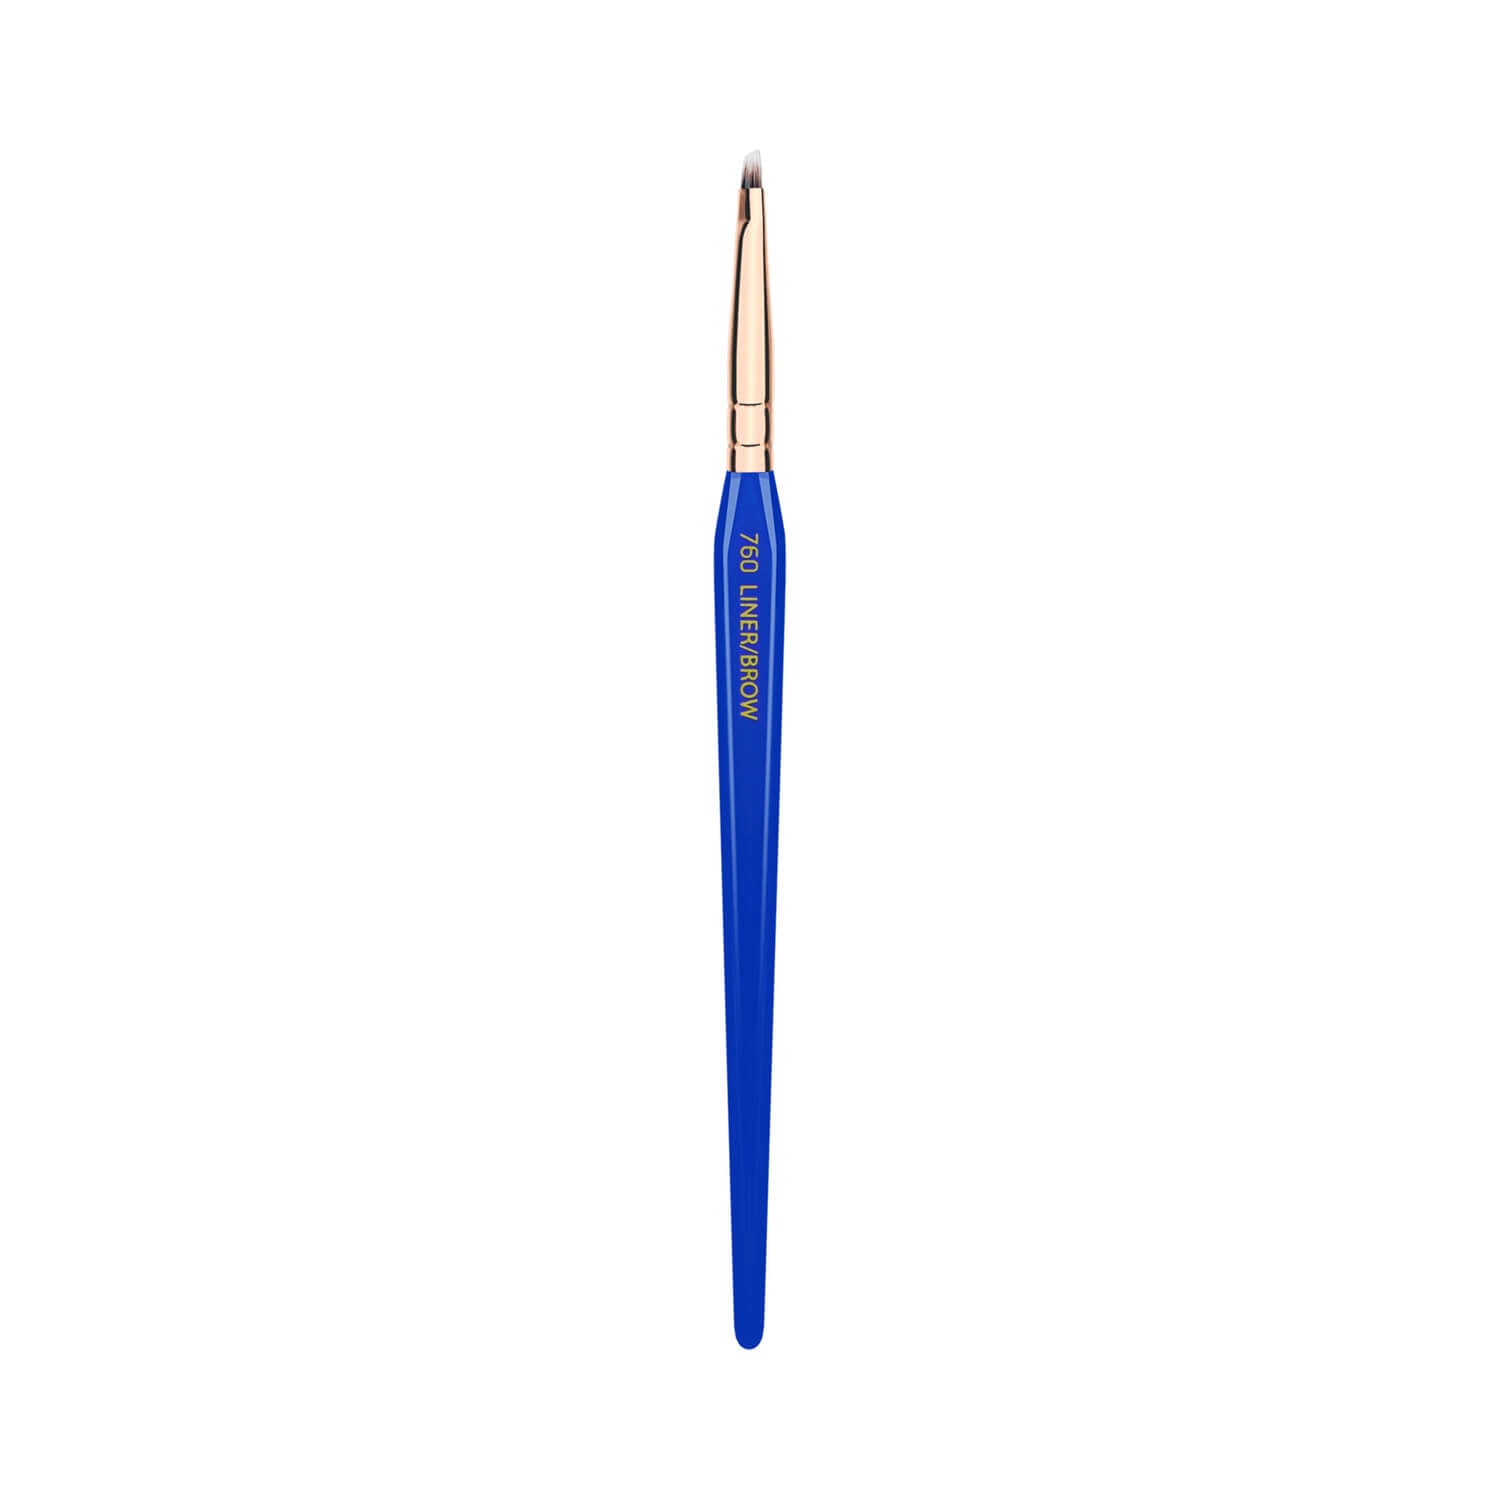 BDellium Tools Golden Triangle 760 Liner/Brow Brush